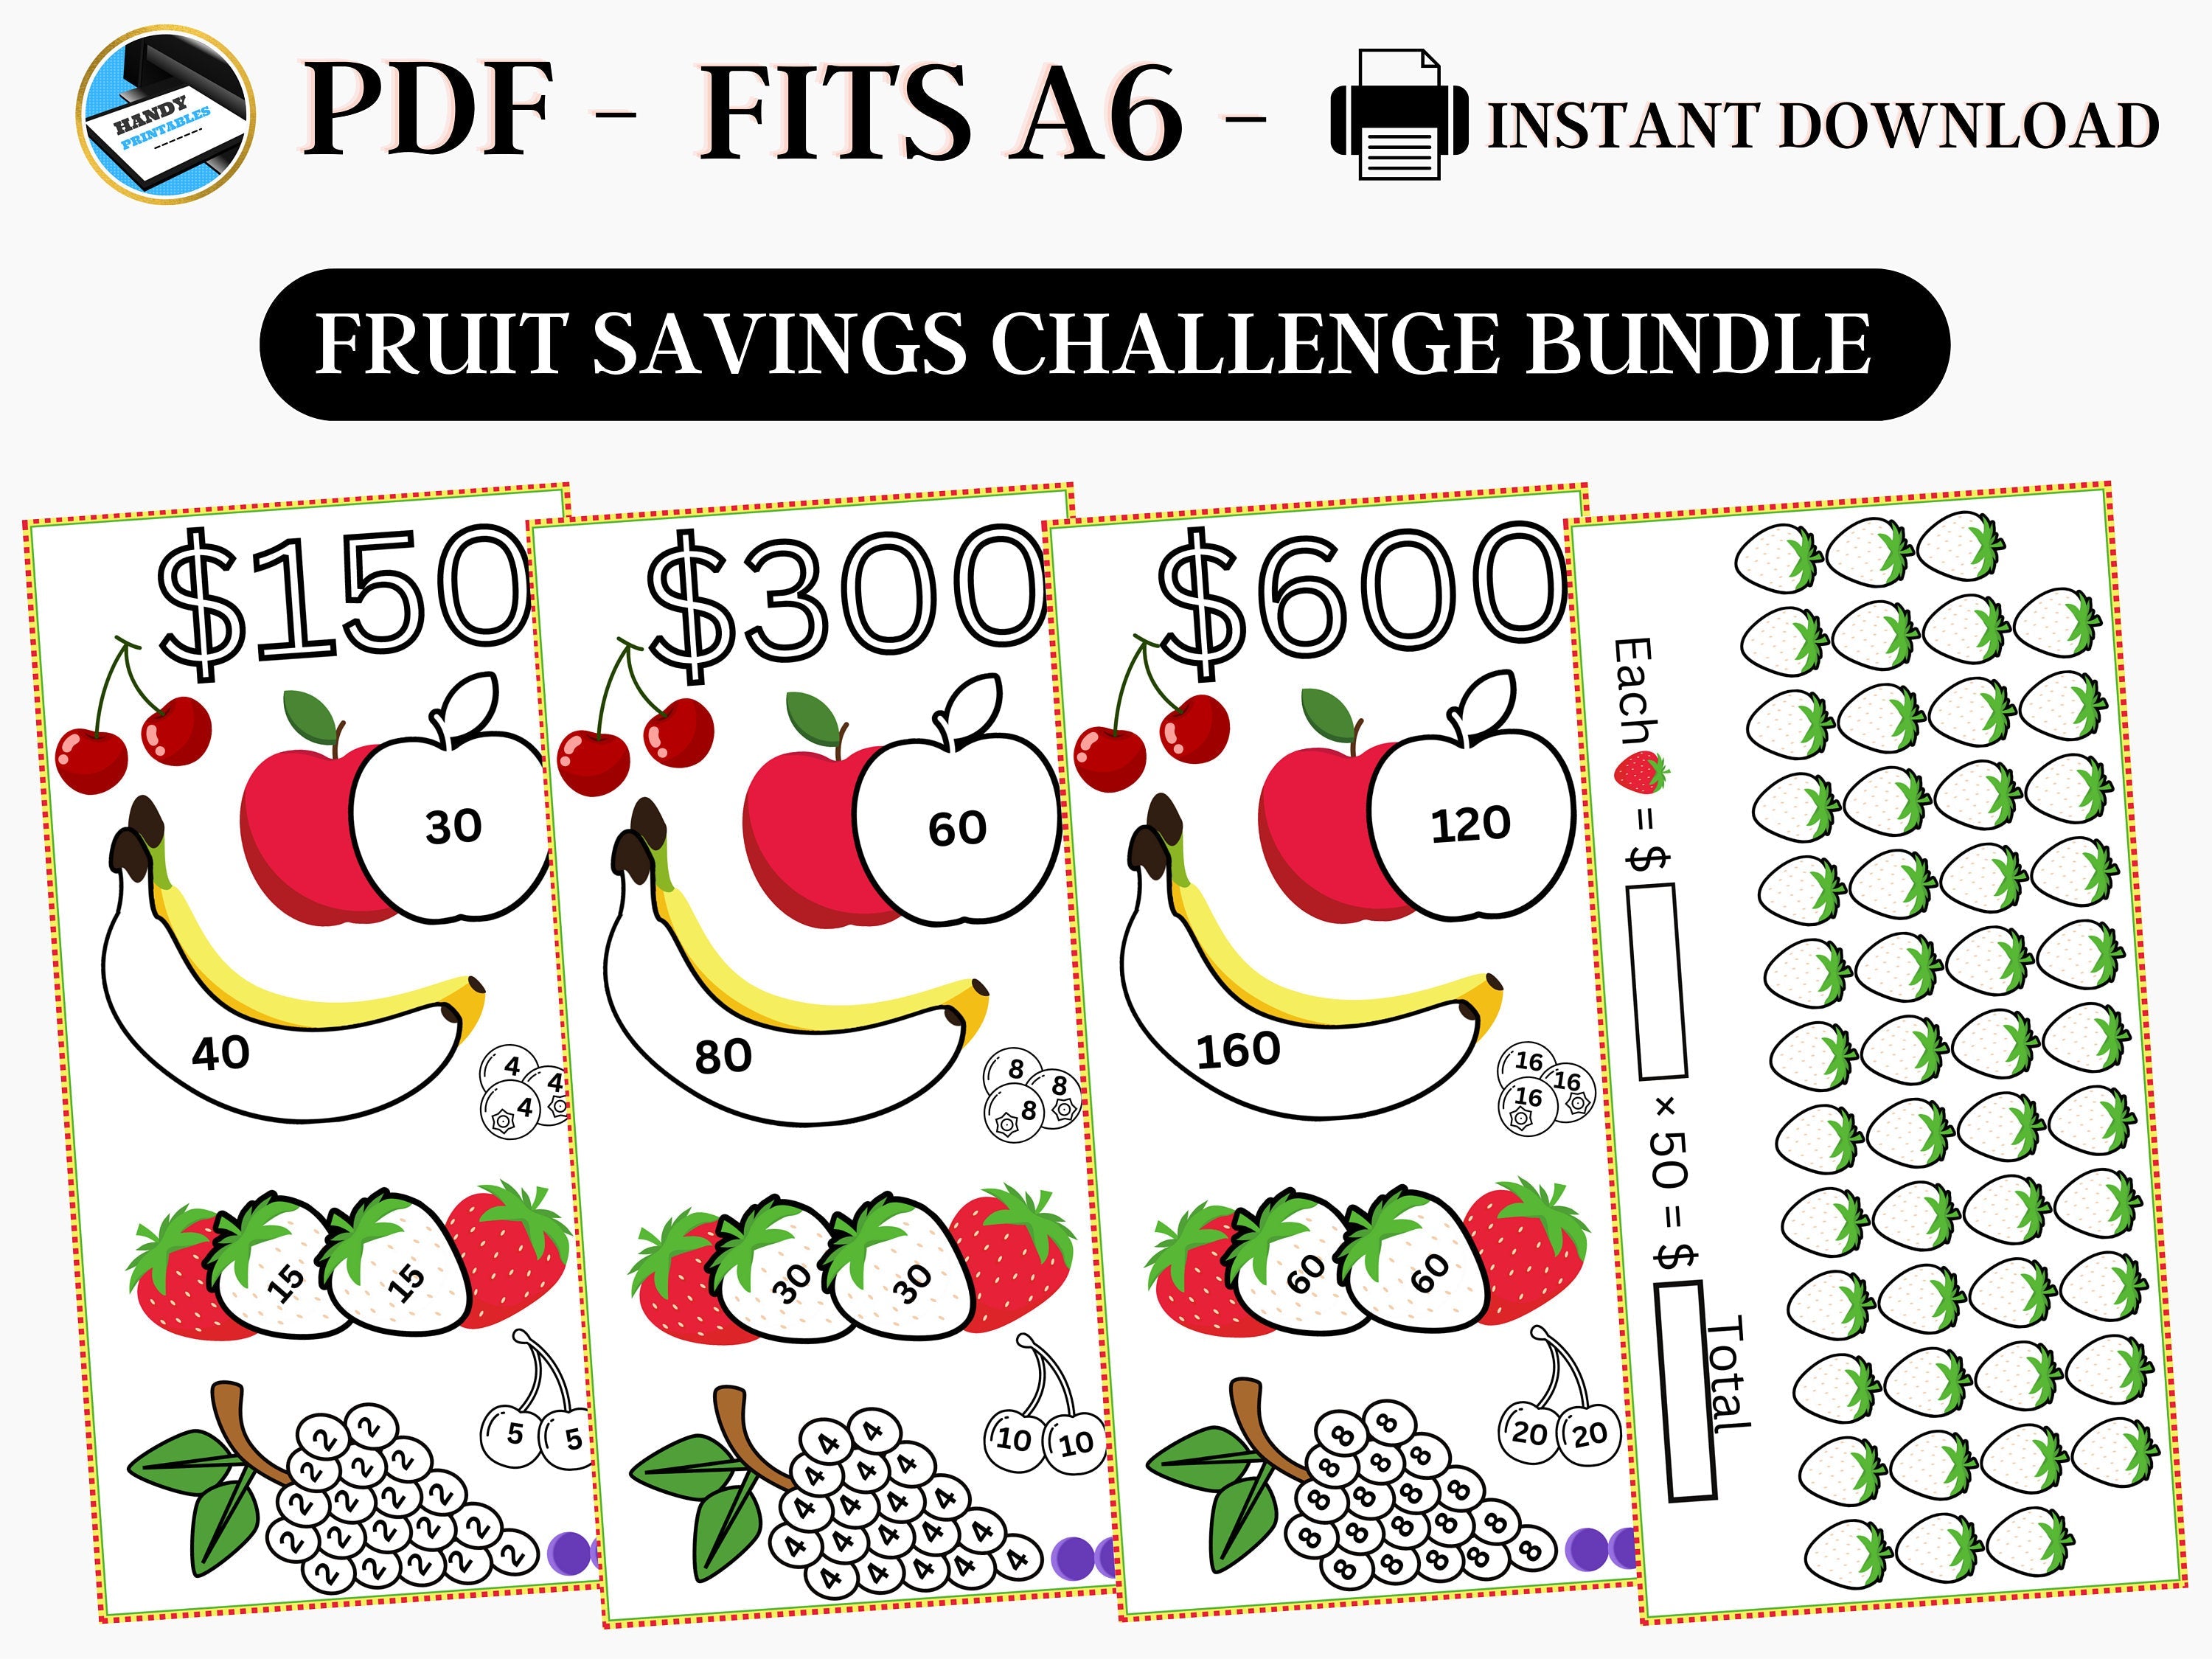 Savings Challenge Printable, A6 Savings Challenge, Fruits Savings Challenge, Savings Challenge Bundle, A6 Sized Mini Savings, Fits A6, PDF - HandyPrintables